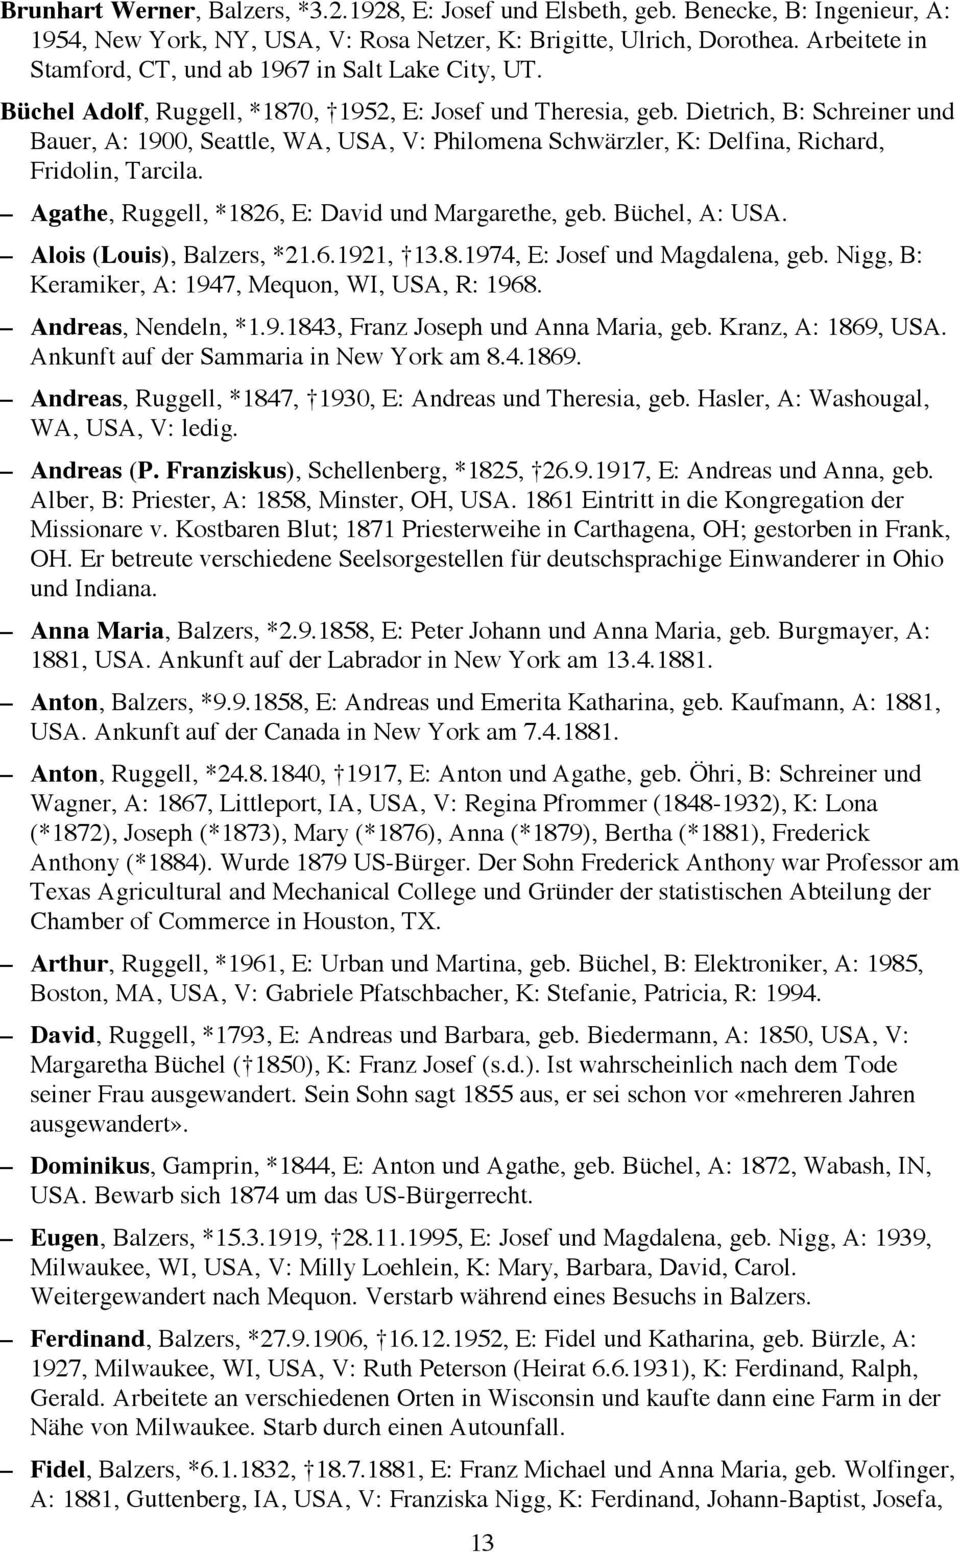 Dietrich, B: Schreiner und Bauer, A: 1900, Seattle, WA, USA, V: Philomena Schwärzler, K: Delfina, Richard, Fridolin, Tarcila. Agathe, Ruggell, *1826, E: David und Margarethe, geb. Büchel, A: USA.